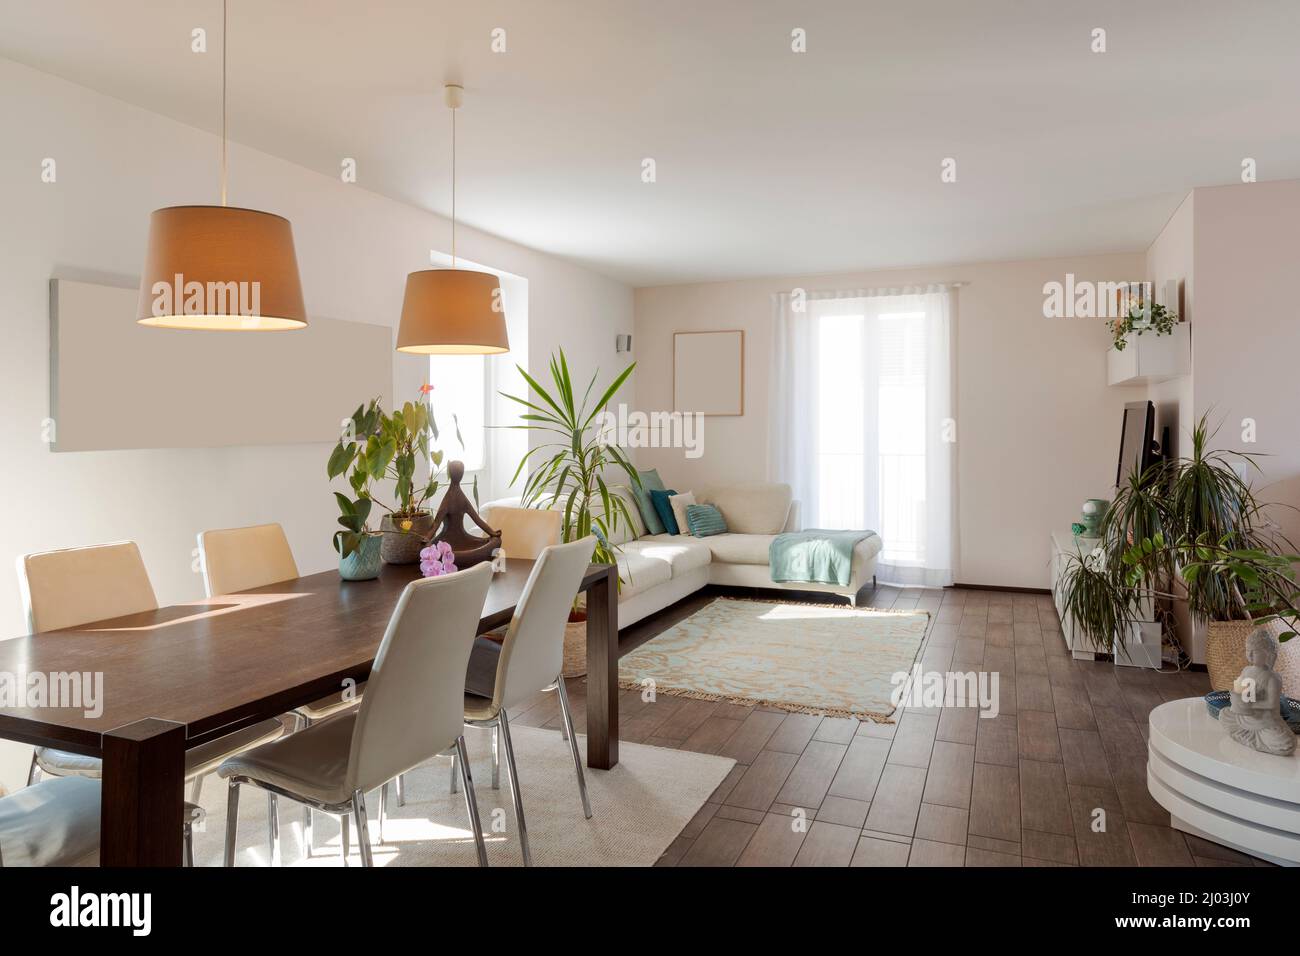 Comedor moderno con amplios ventanales fotografías imágenes de alta resolución - Alamy